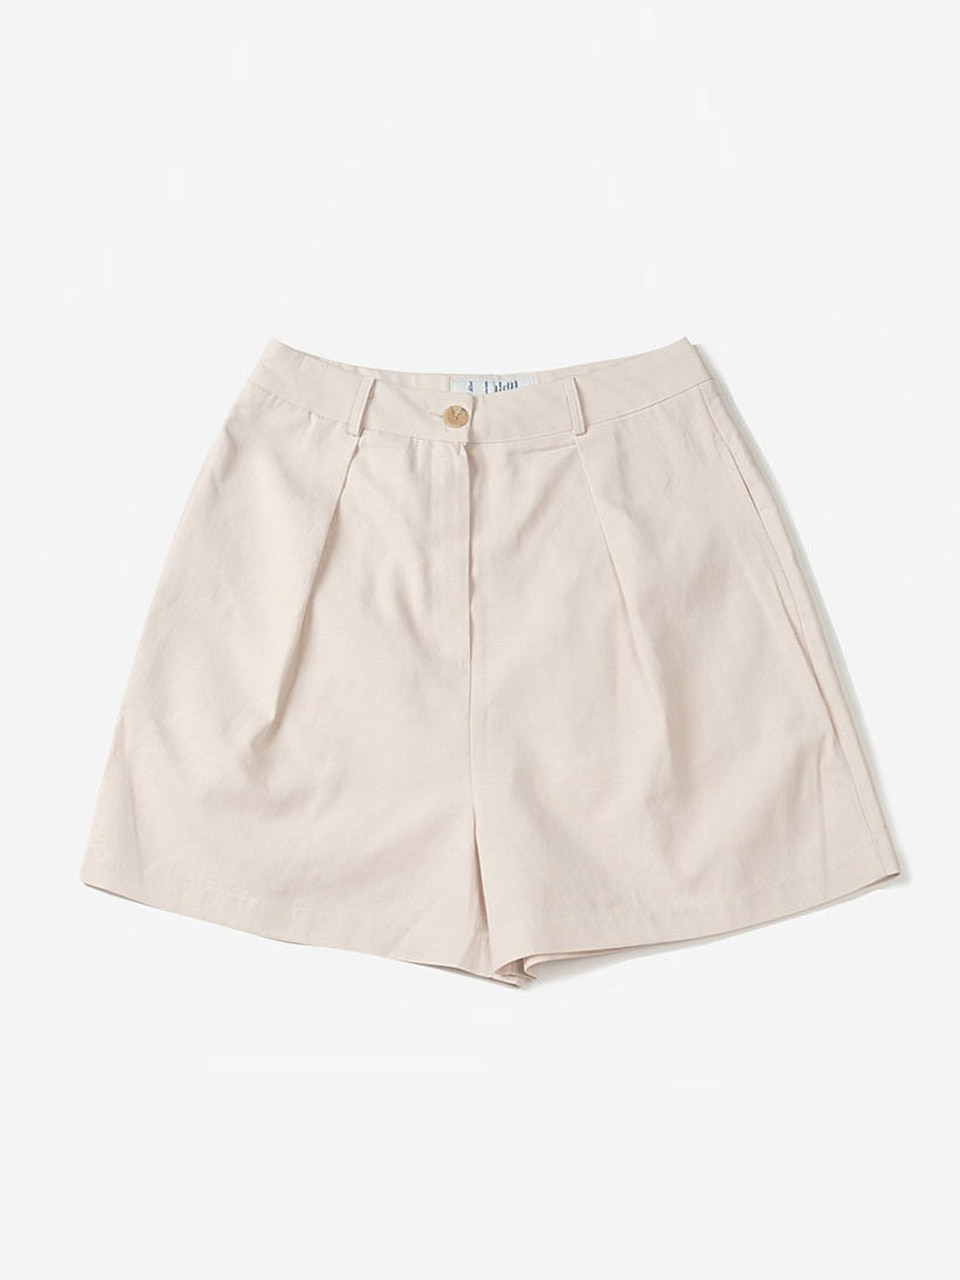 standard shorts - seashellBRENDA BRENDEN